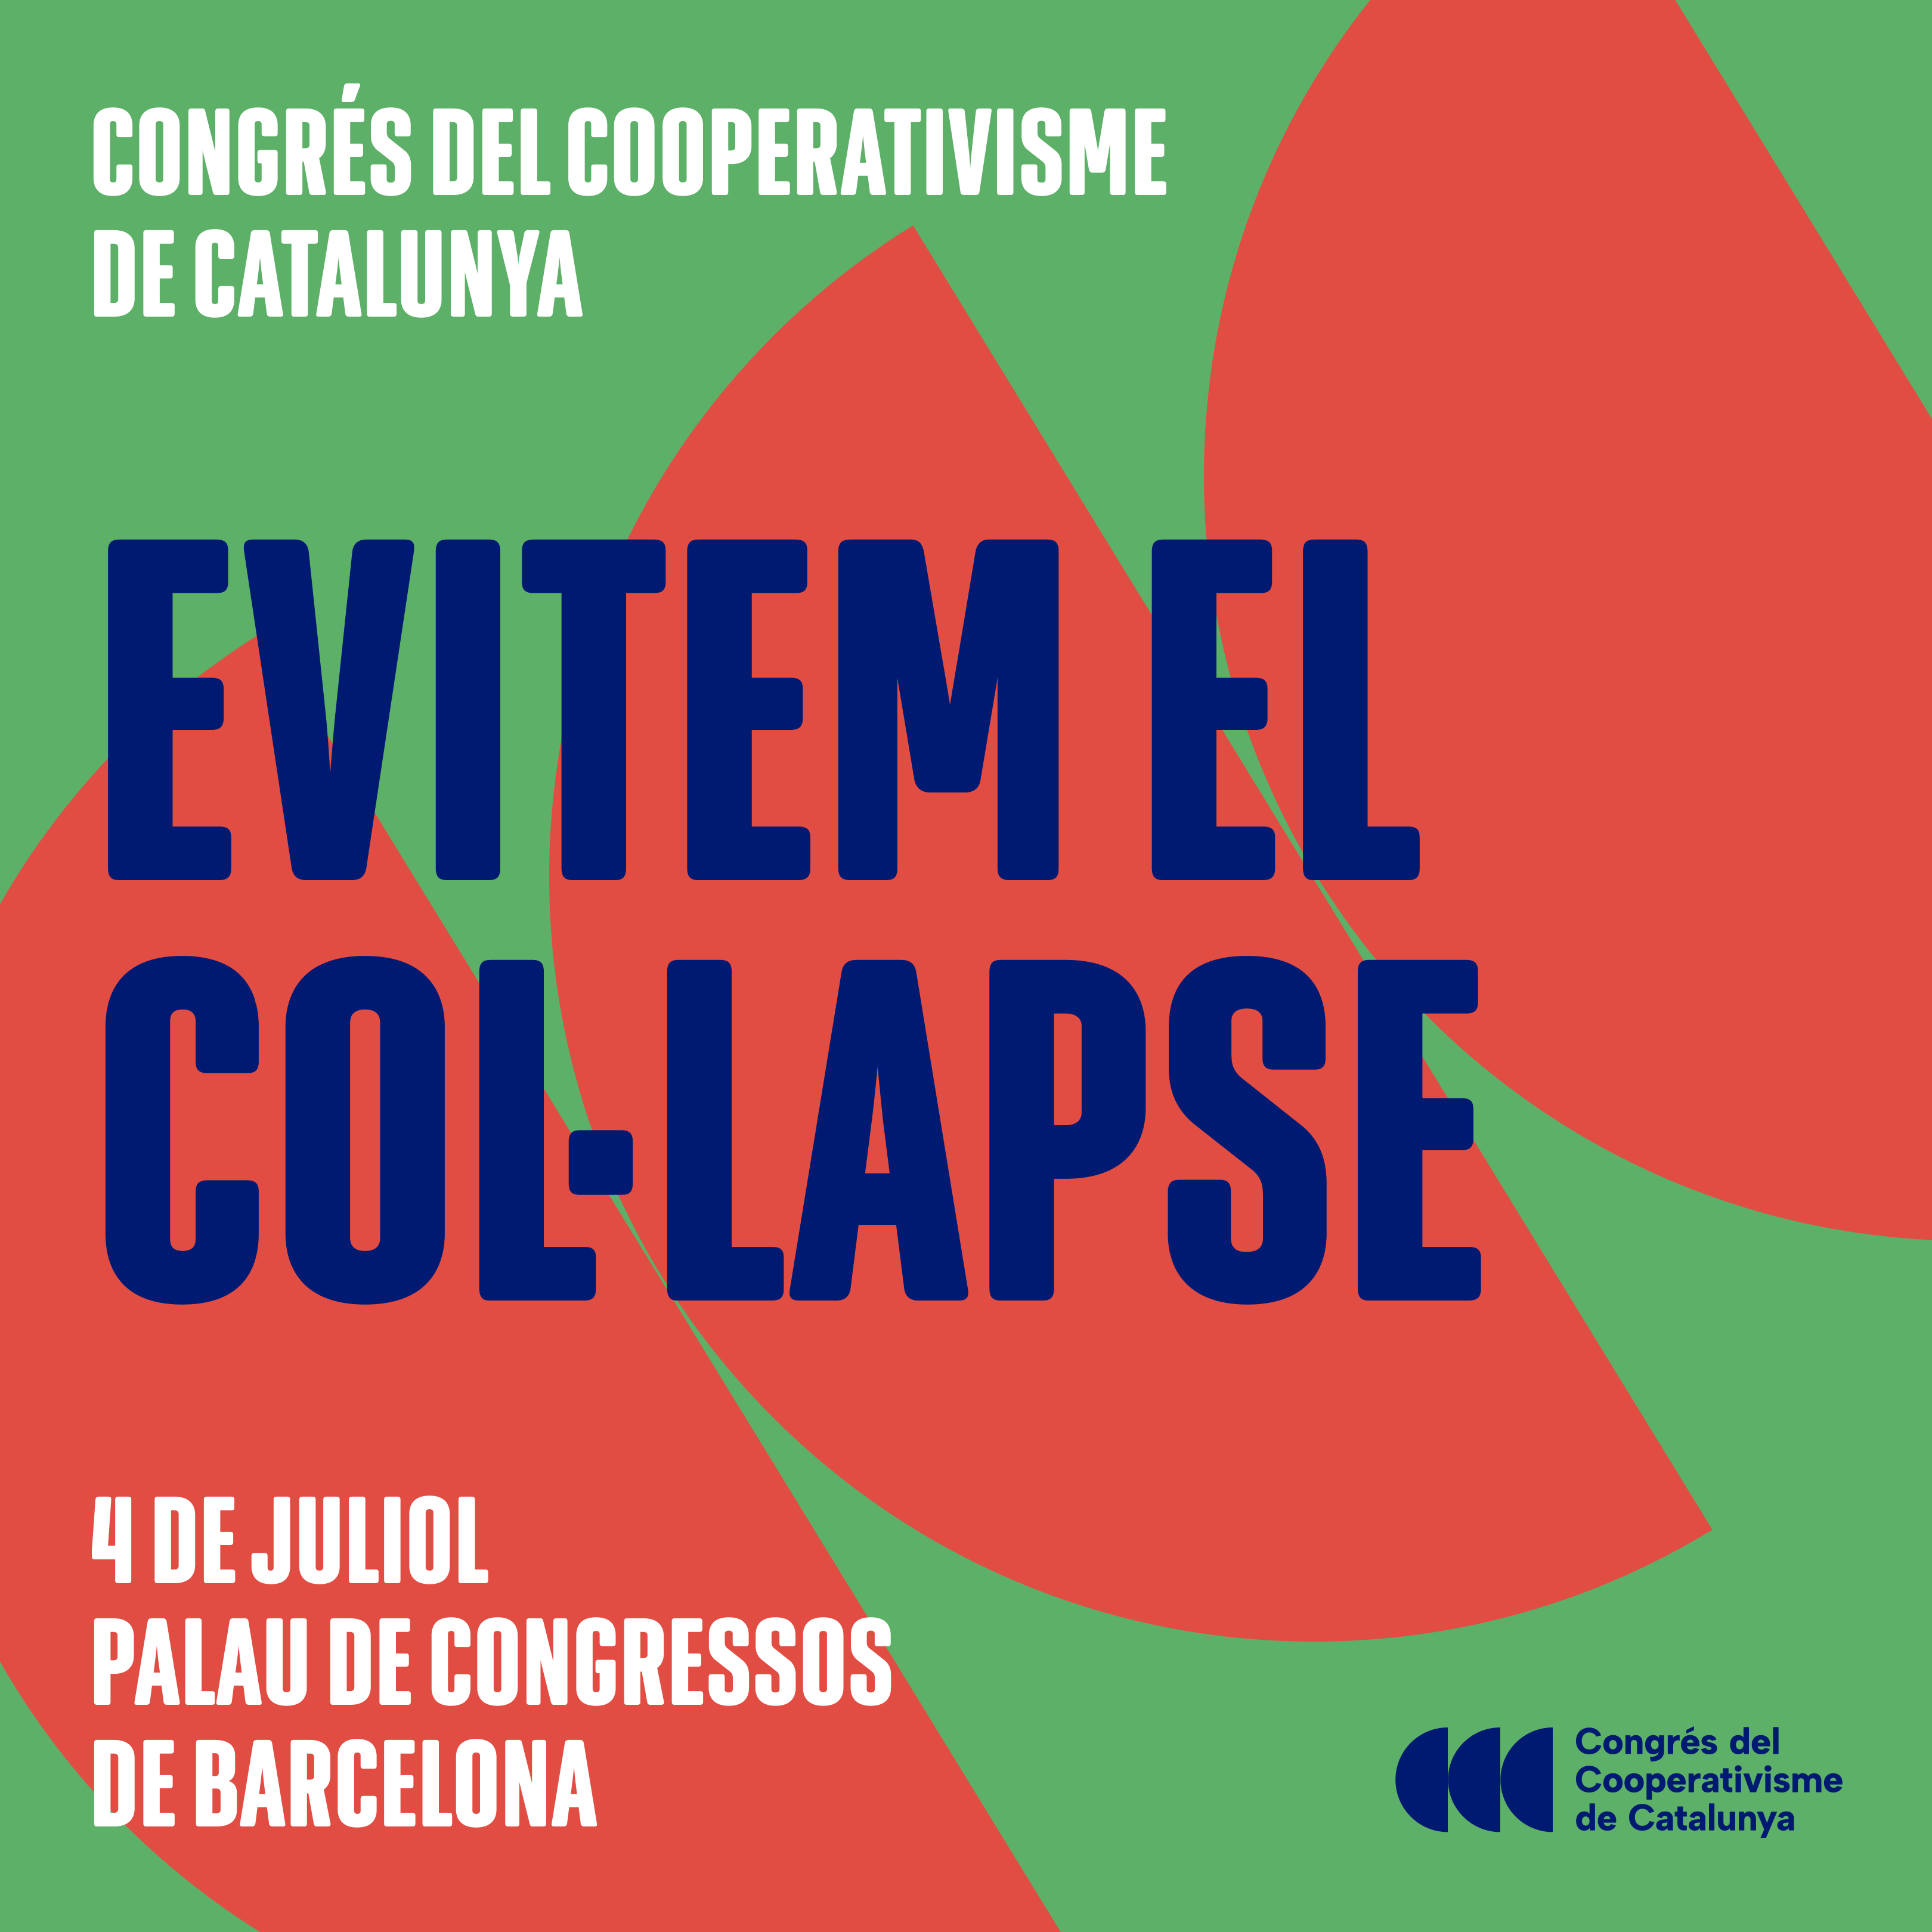 El cooperativisme català celebra el Congrés per commemorar els 125 anys